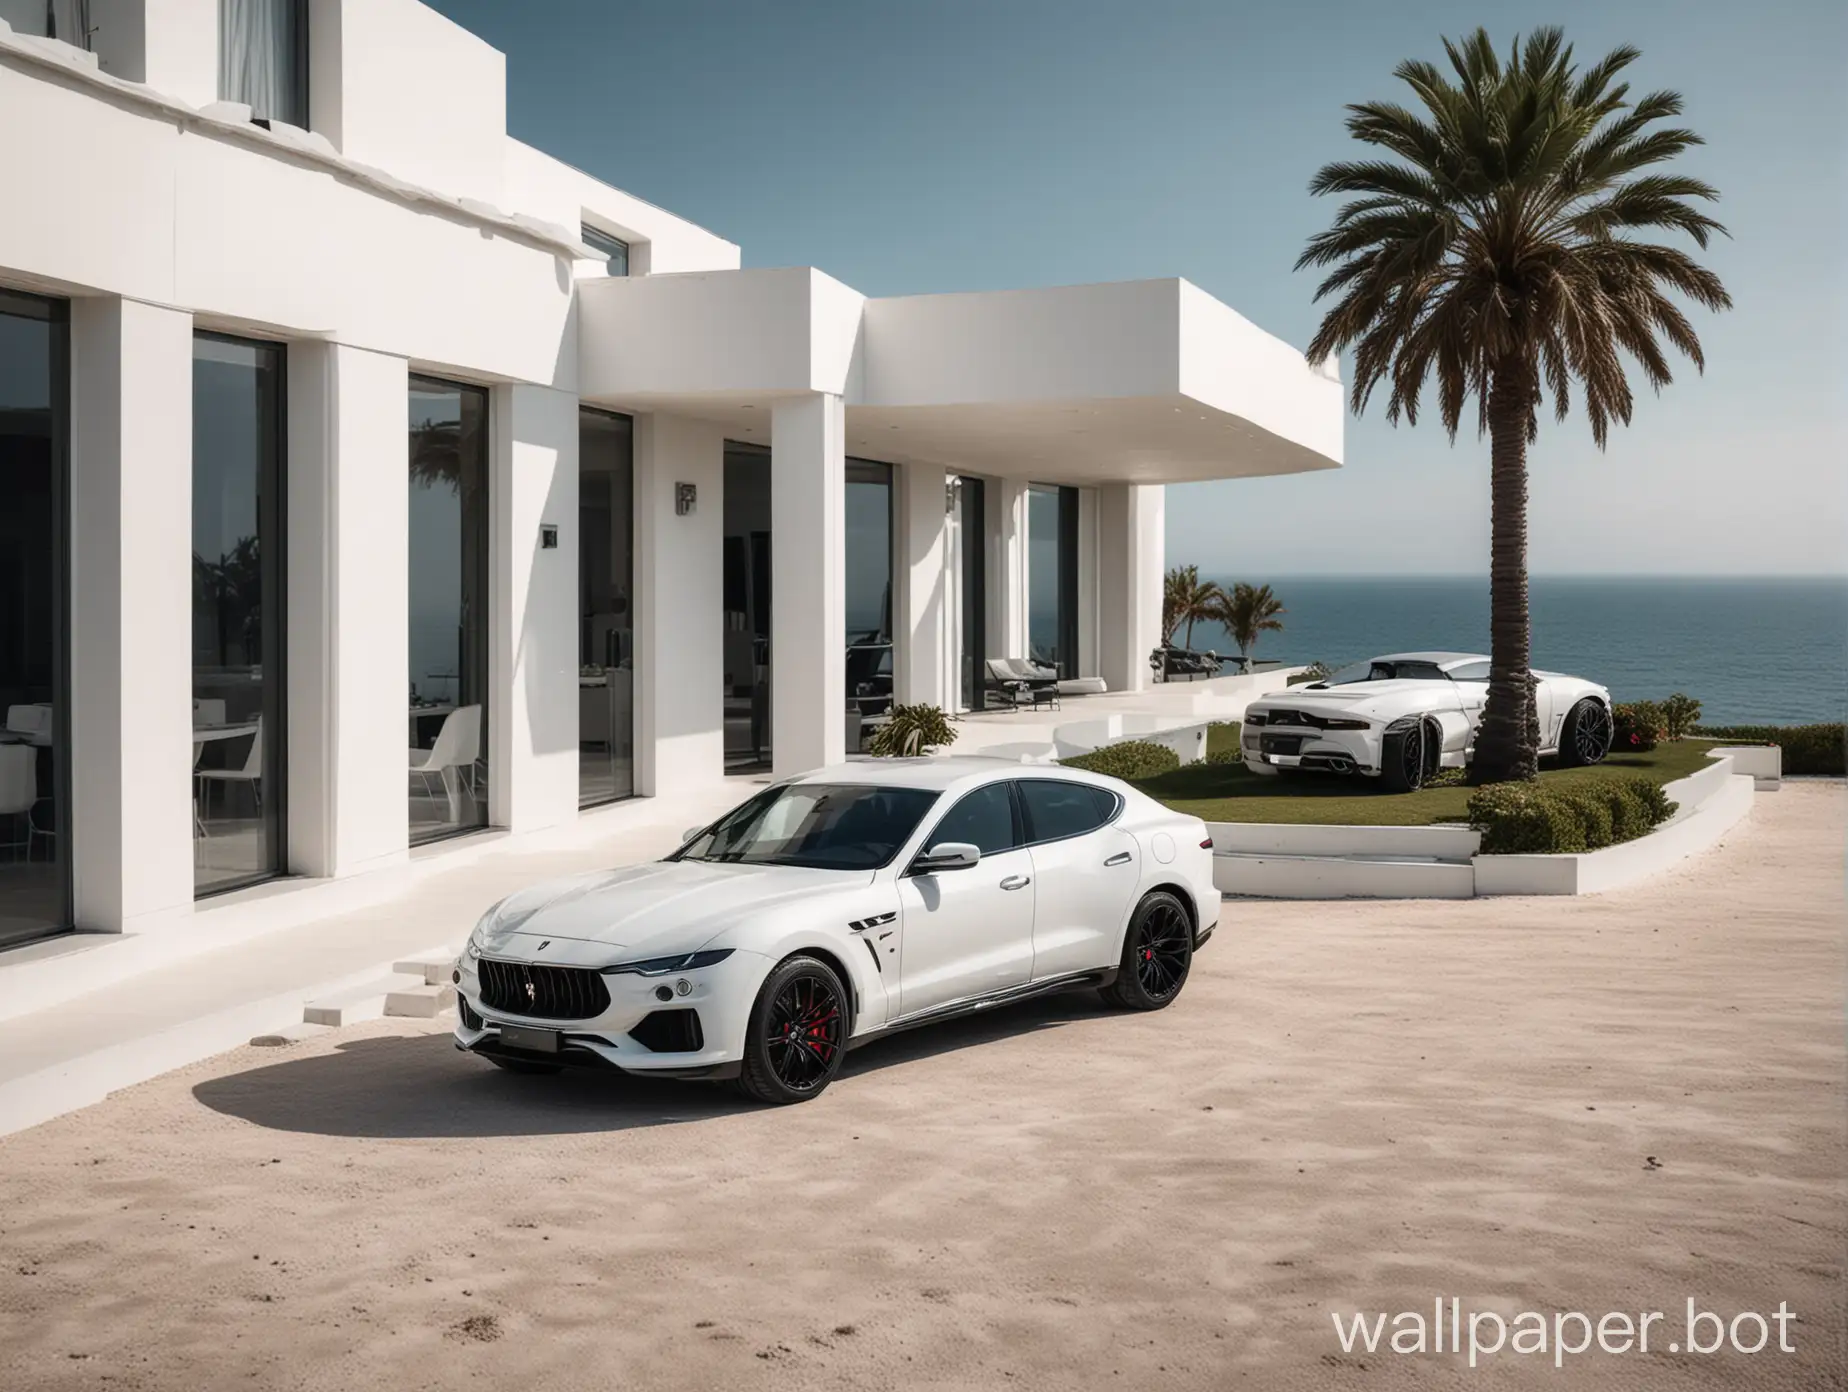 A wallpaper showcasing a luxury lifestyle, with a modern minimalistic villa close by the sea, a white Maserati Levante Novitec and a white Lamborghini Revuelto parked in front